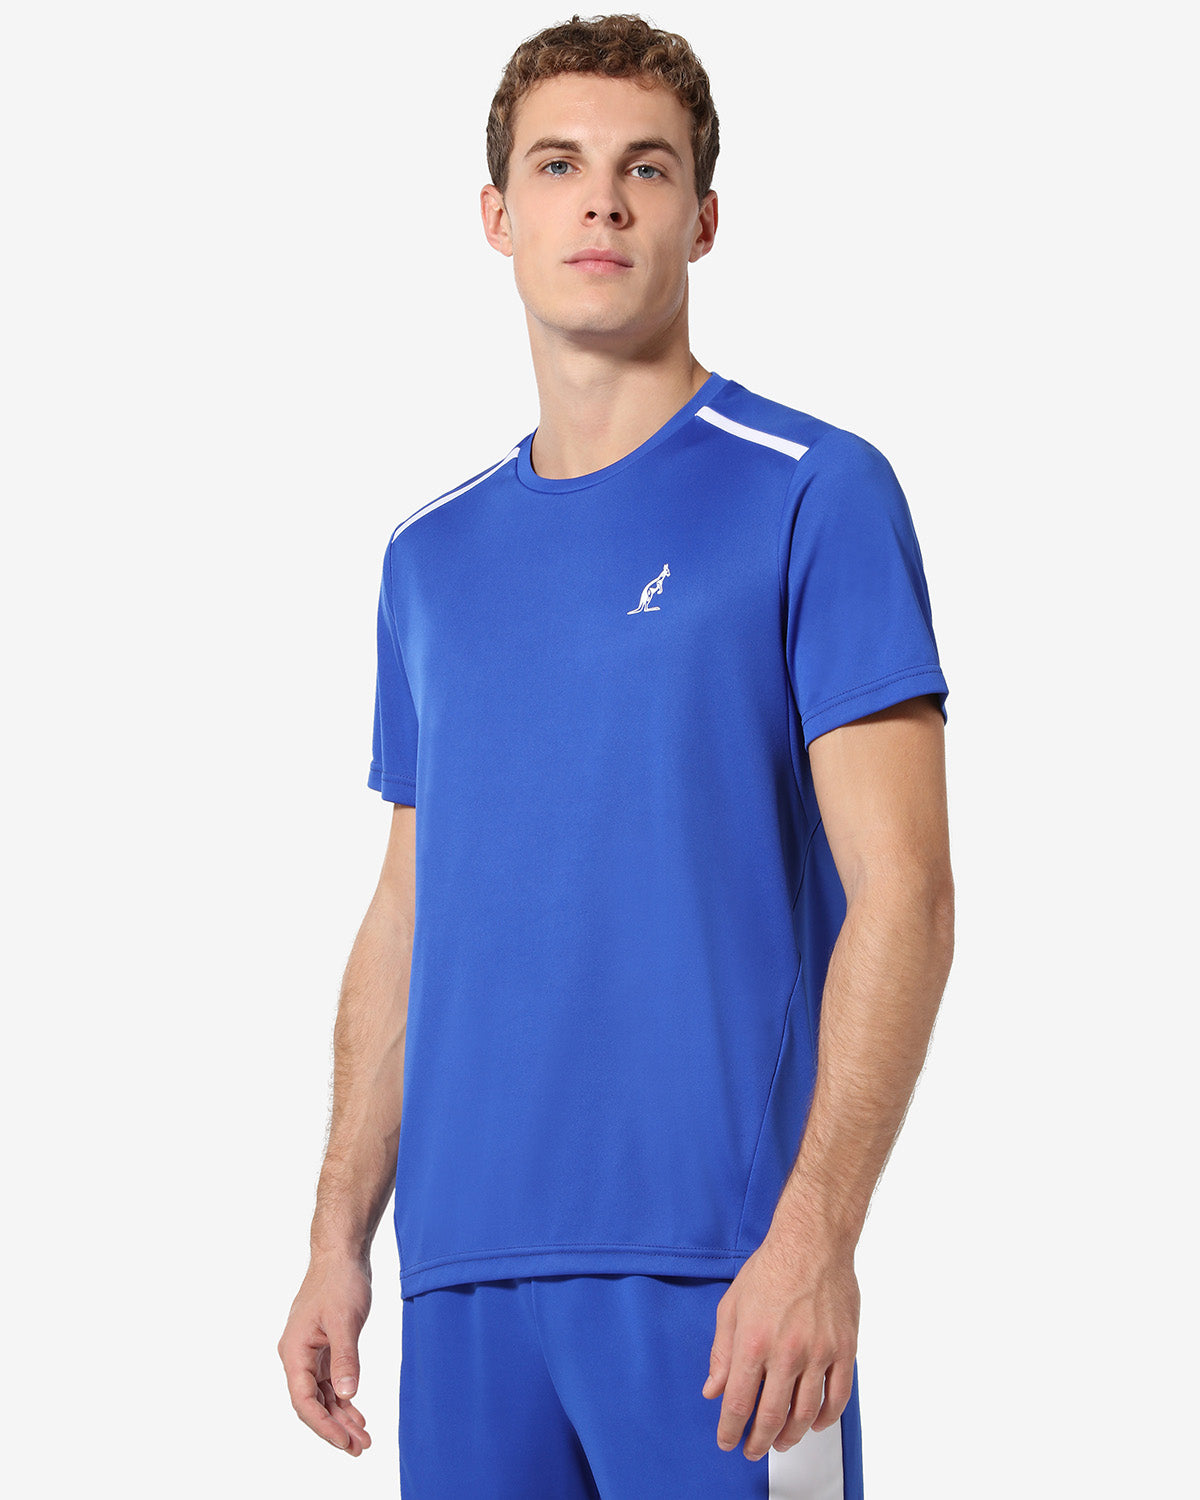 T-shirt Ace: Australian Tennis